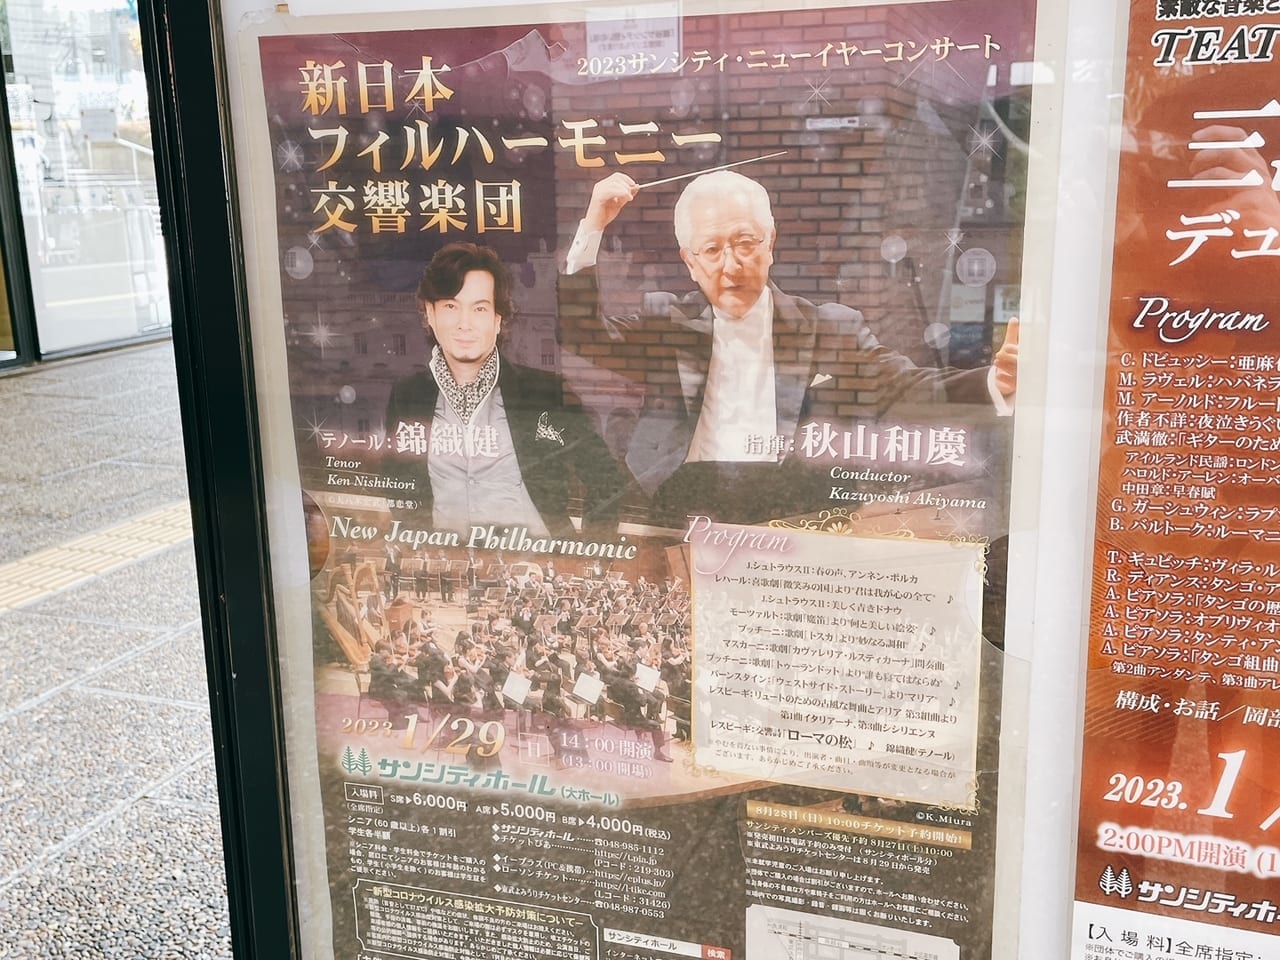 新日本フィルハーモニー交響楽団がサンシティにきます。